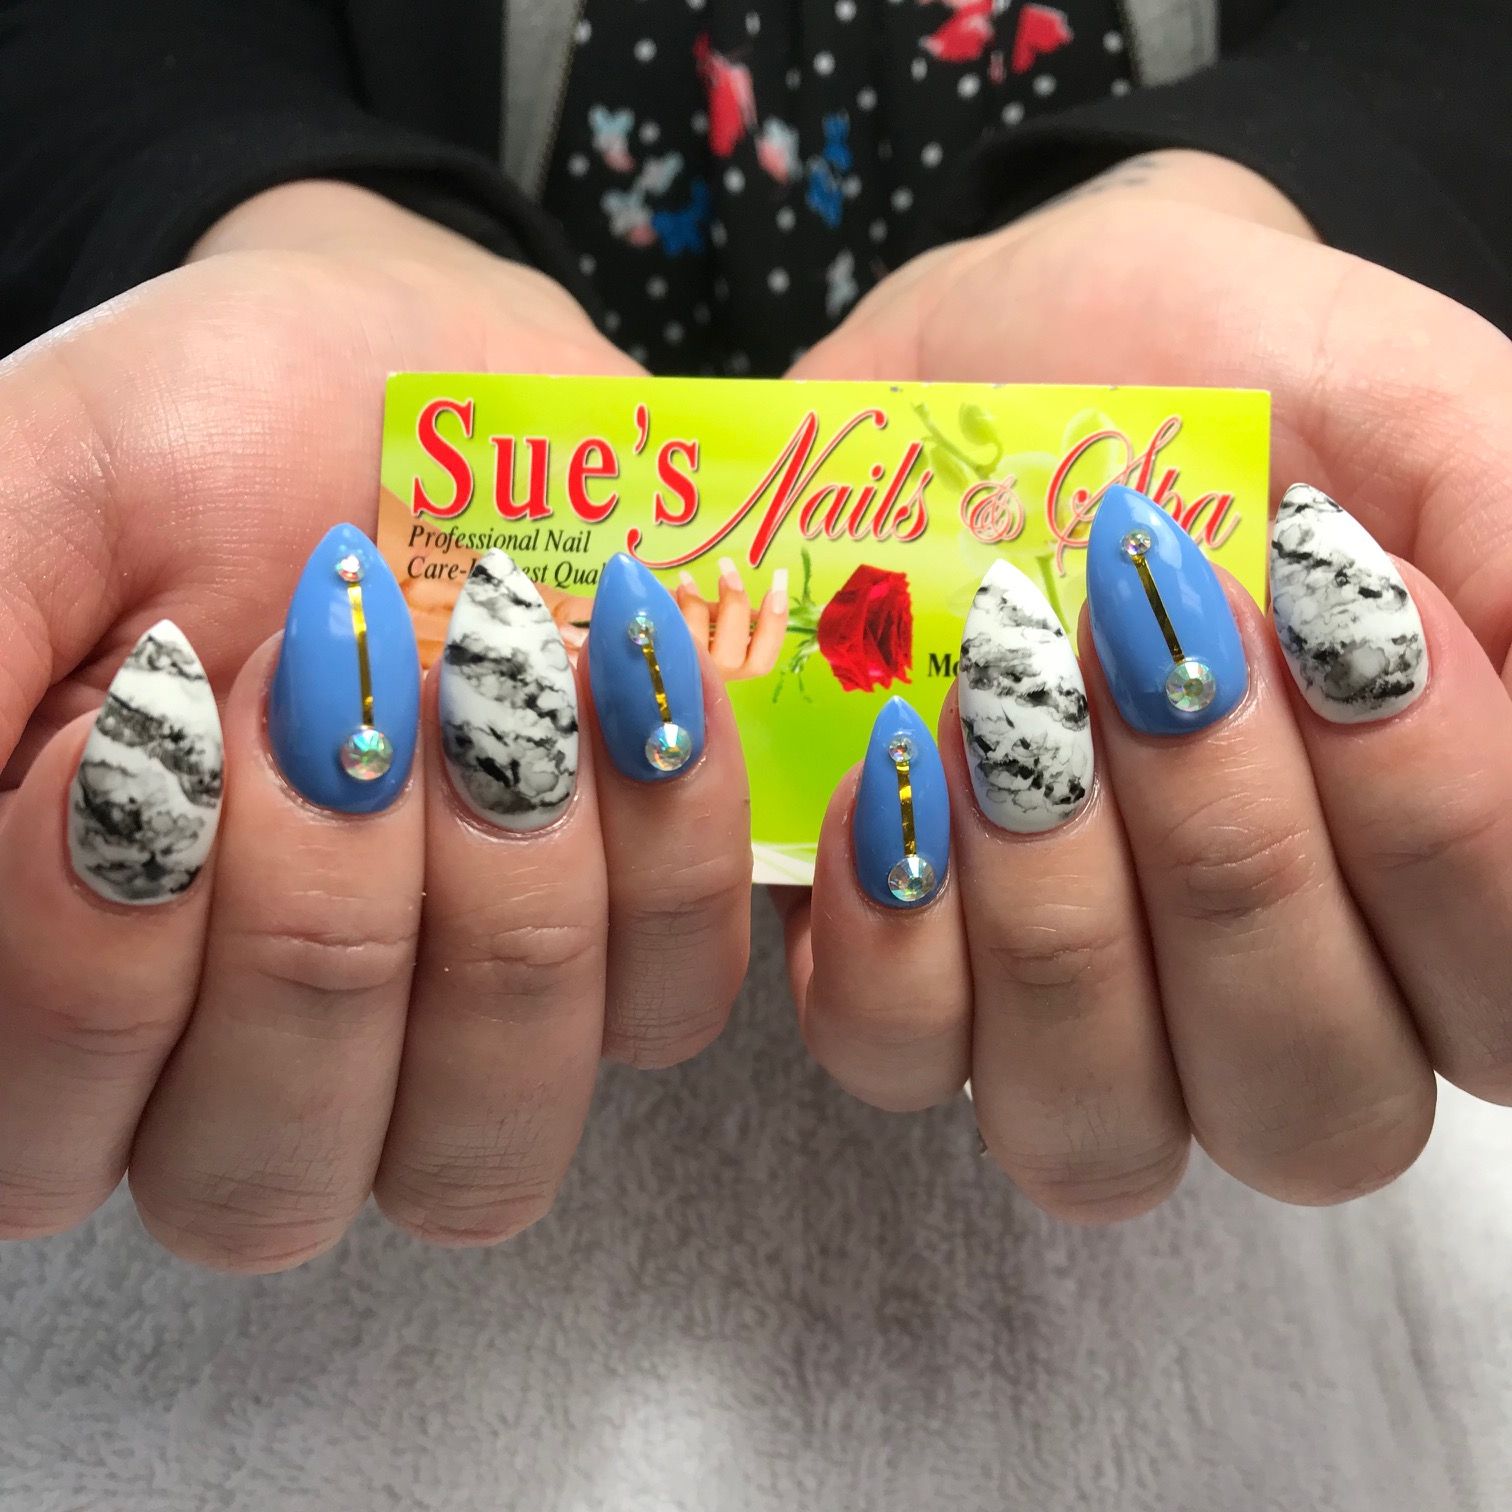 Sue's Nails & Spa Photo